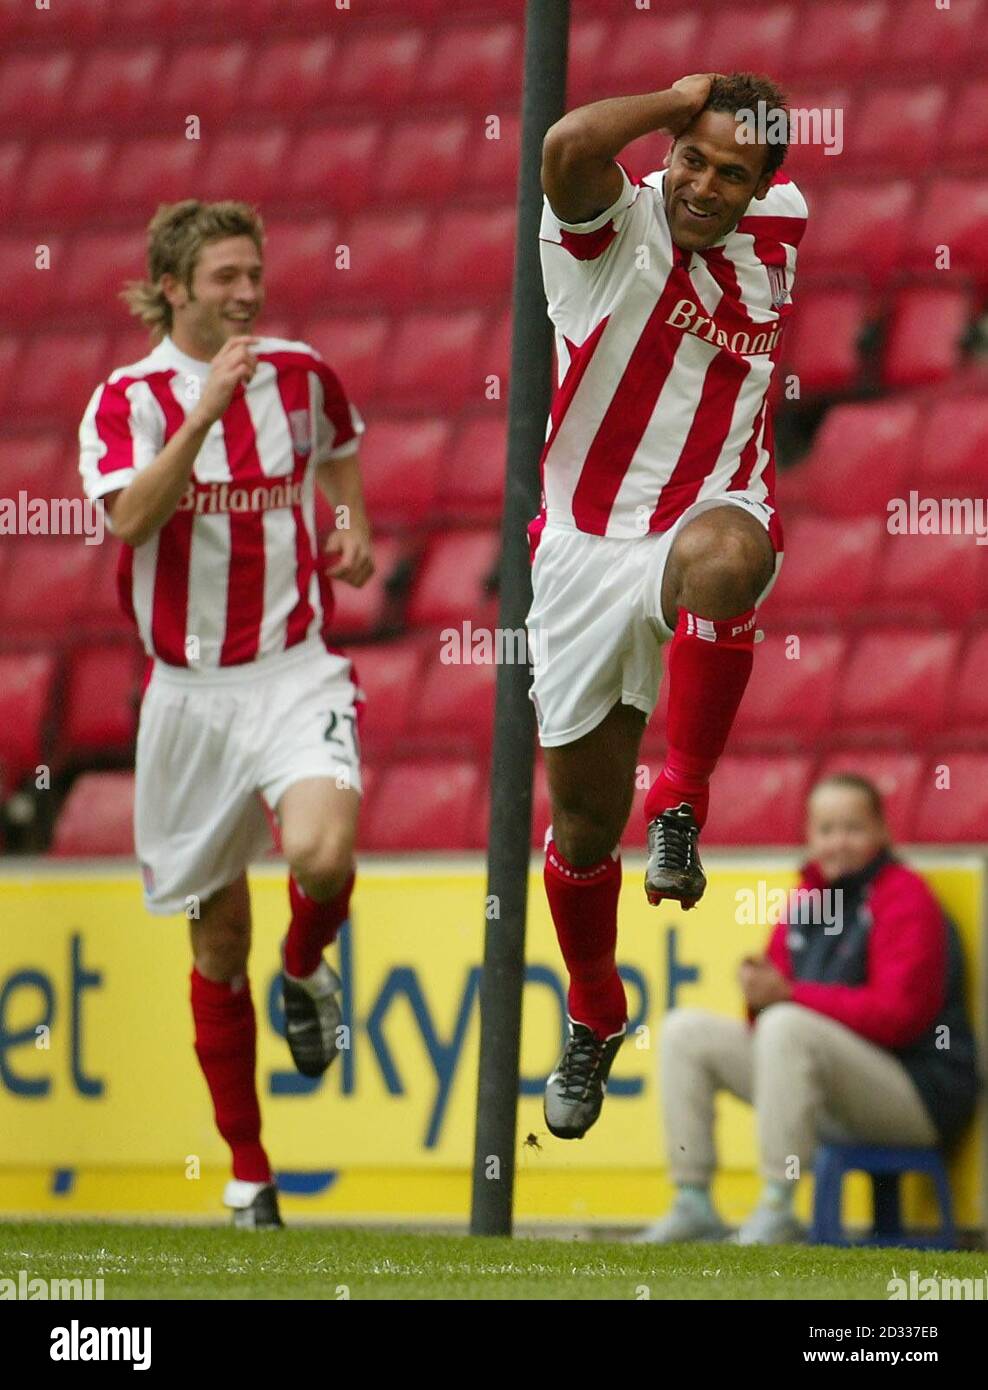 Wayne Thomas von Stoke City (rechts) feiert den Treffer gegen Nottingham Forest während ihres Nationwide Division One-Spiels im Britannia Stadium, Stoke. DIESES BILD KANN NUR IM RAHMEN EINER REDAKTIONELLEN FUNKTION VERWENDET WERDEN. KEINE INOFFIZIELLE CLUB-WEBSITE. Stockfoto